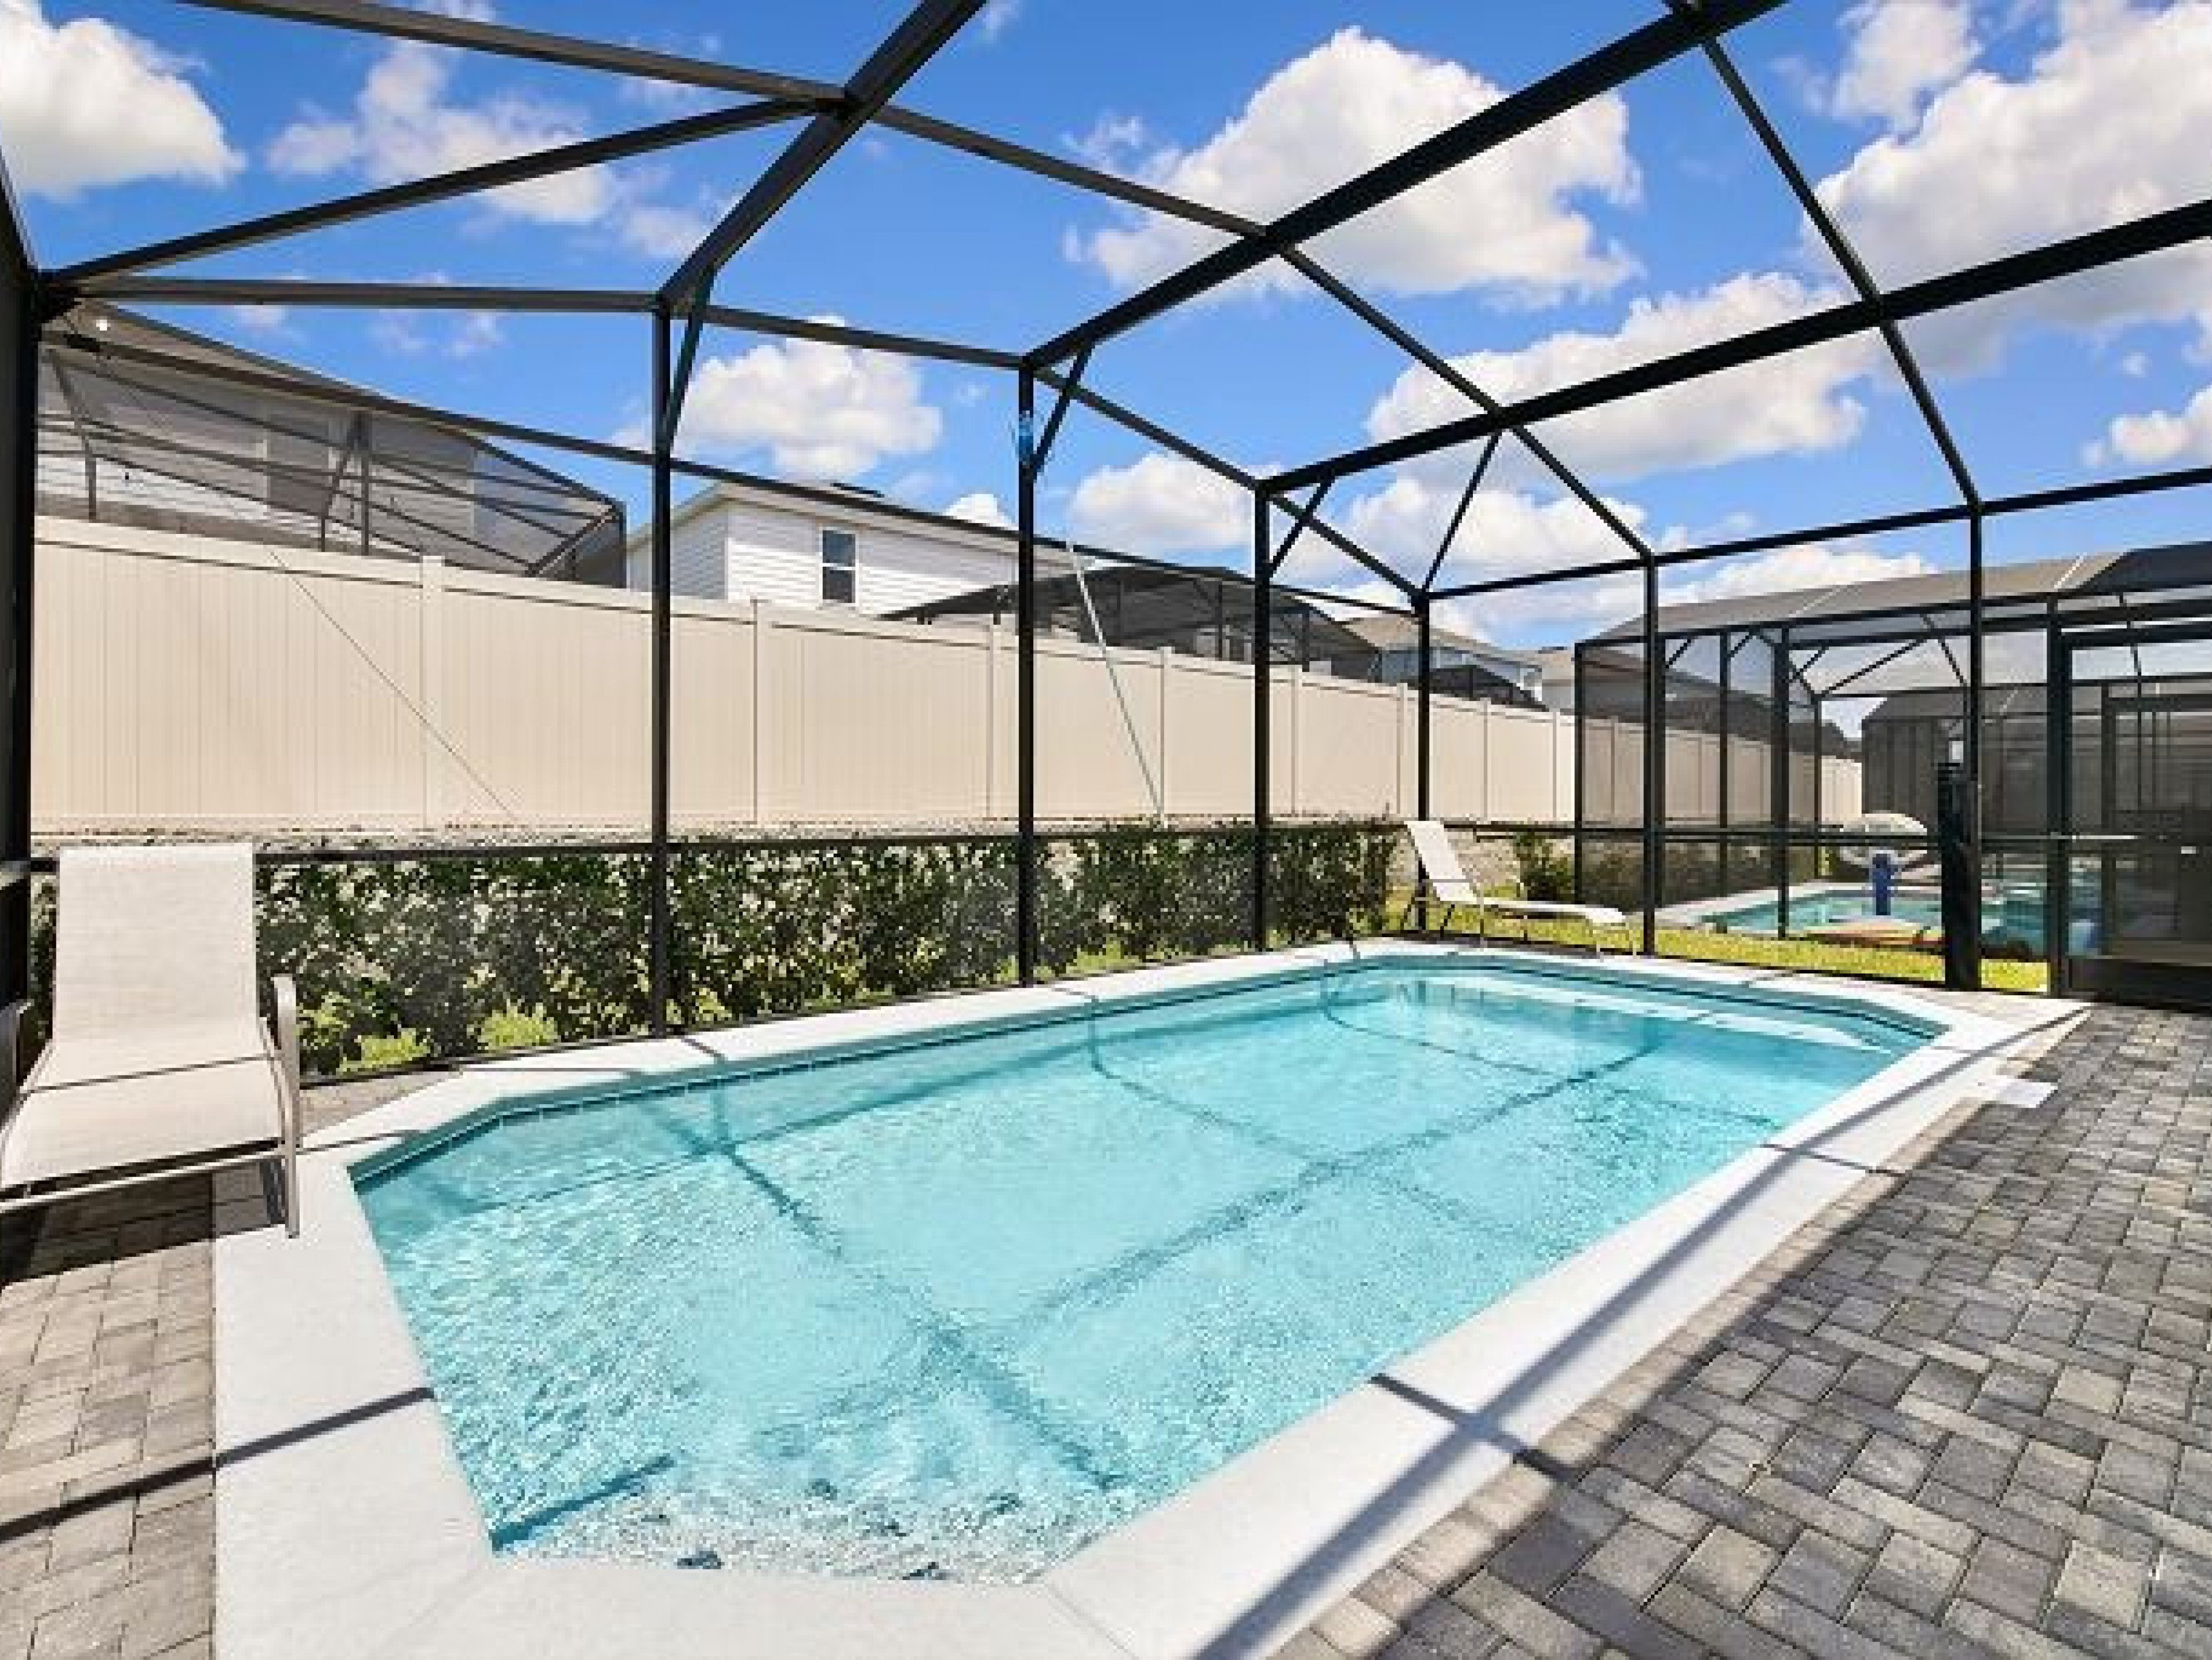 Windsor Island Resort 124 5-bedroom villas near Disney World, Orlando